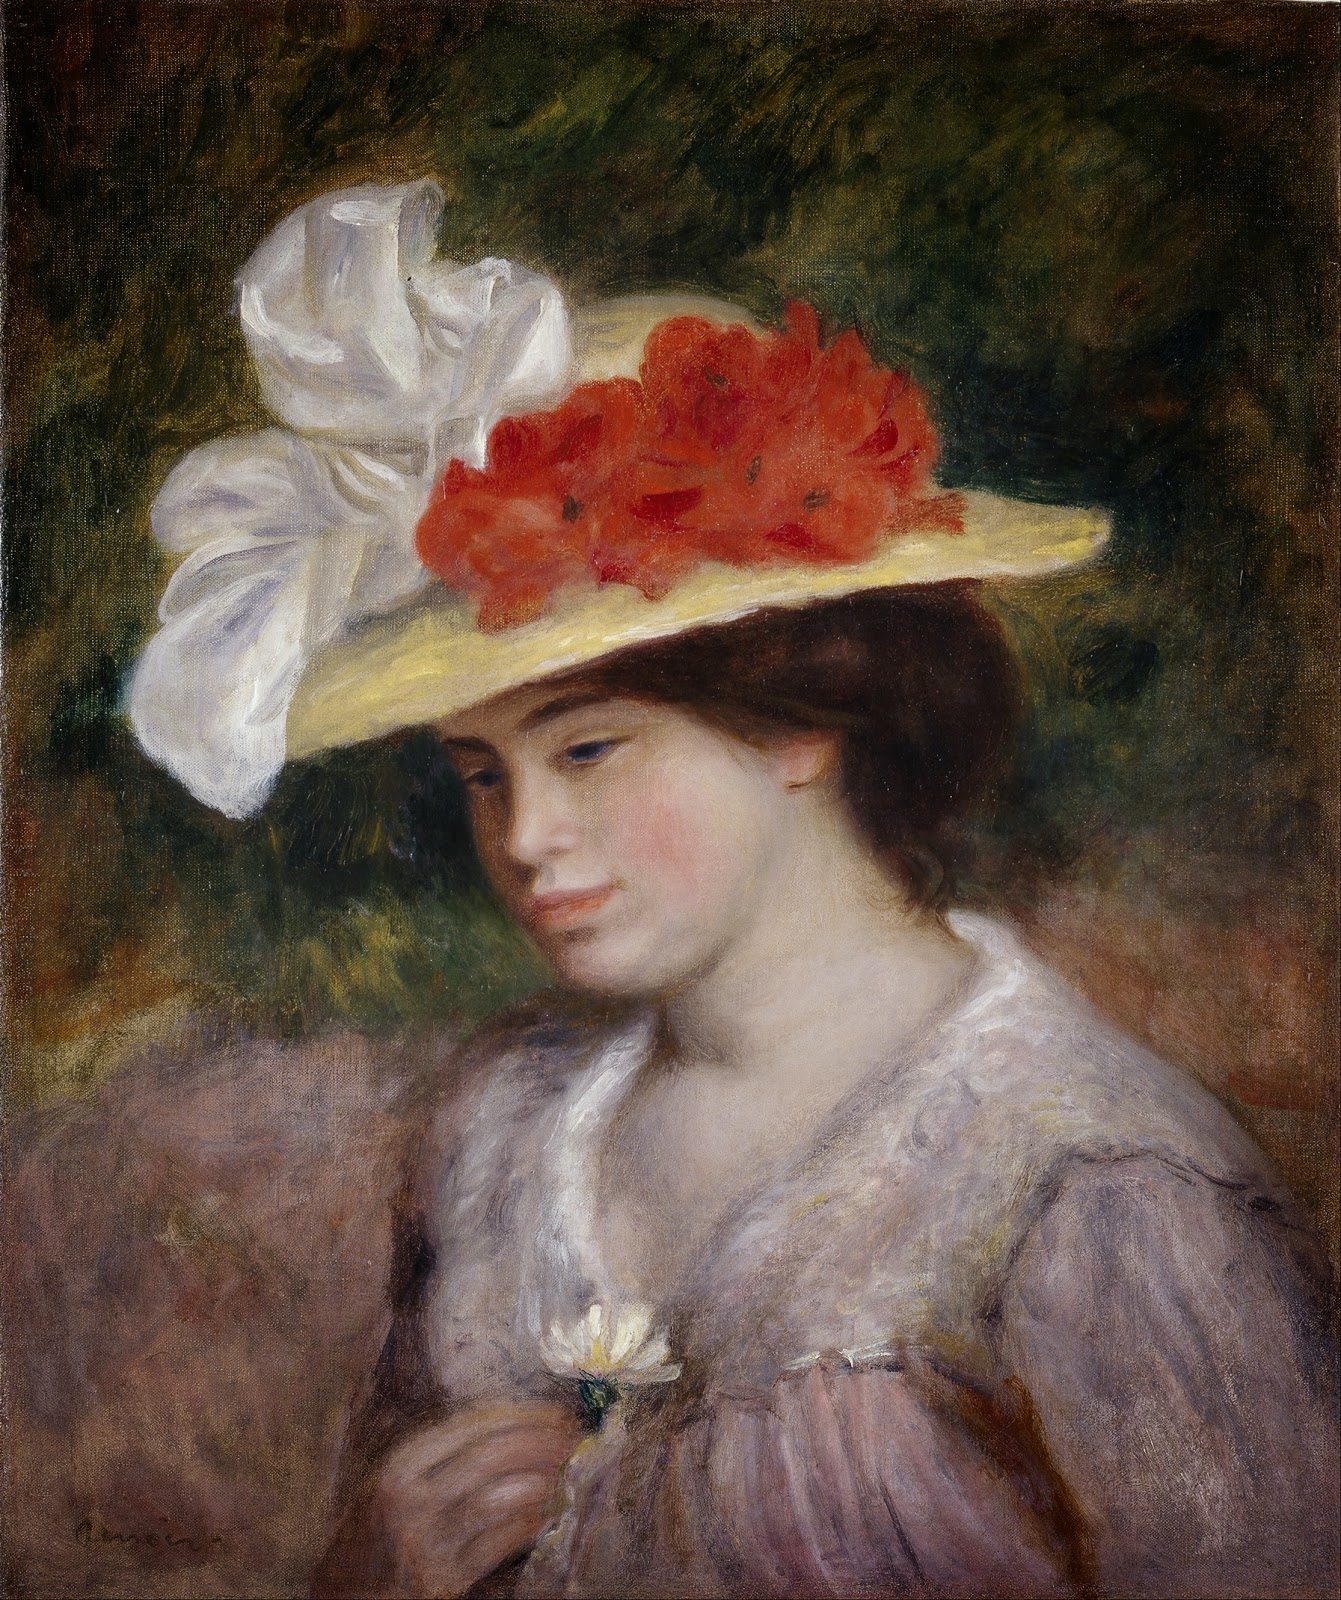 Pierre+Auguste+Renoir-1841-1-19 (400).jpg